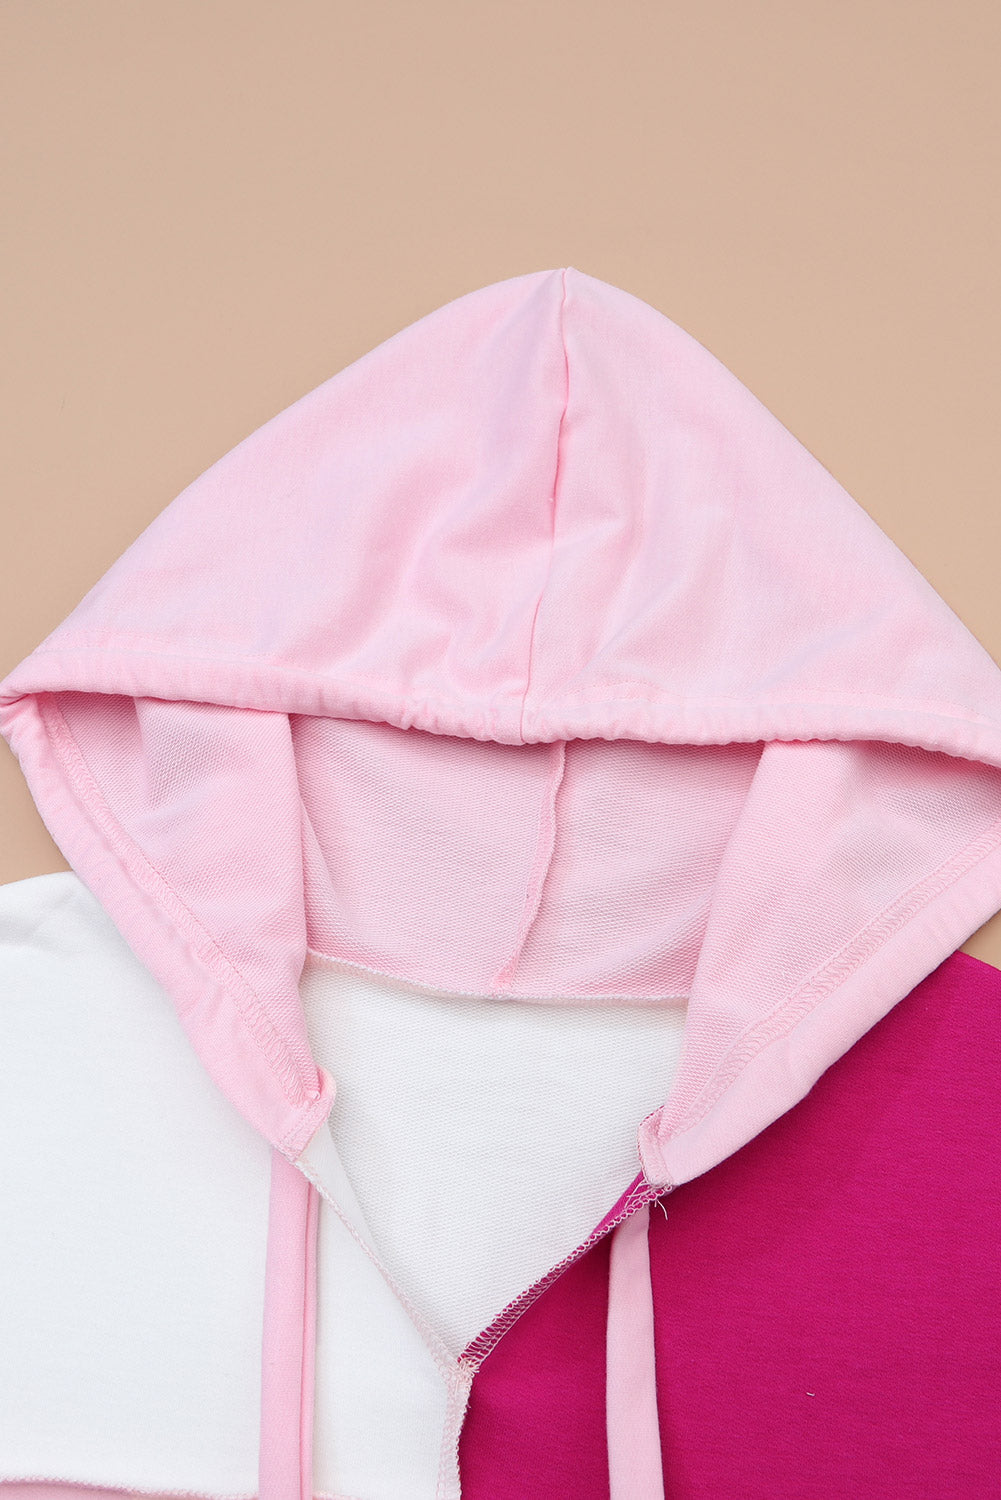 Pulover s kapuco z razkritimi šivi in ​​ohlapnimi rokavi v roza barvah